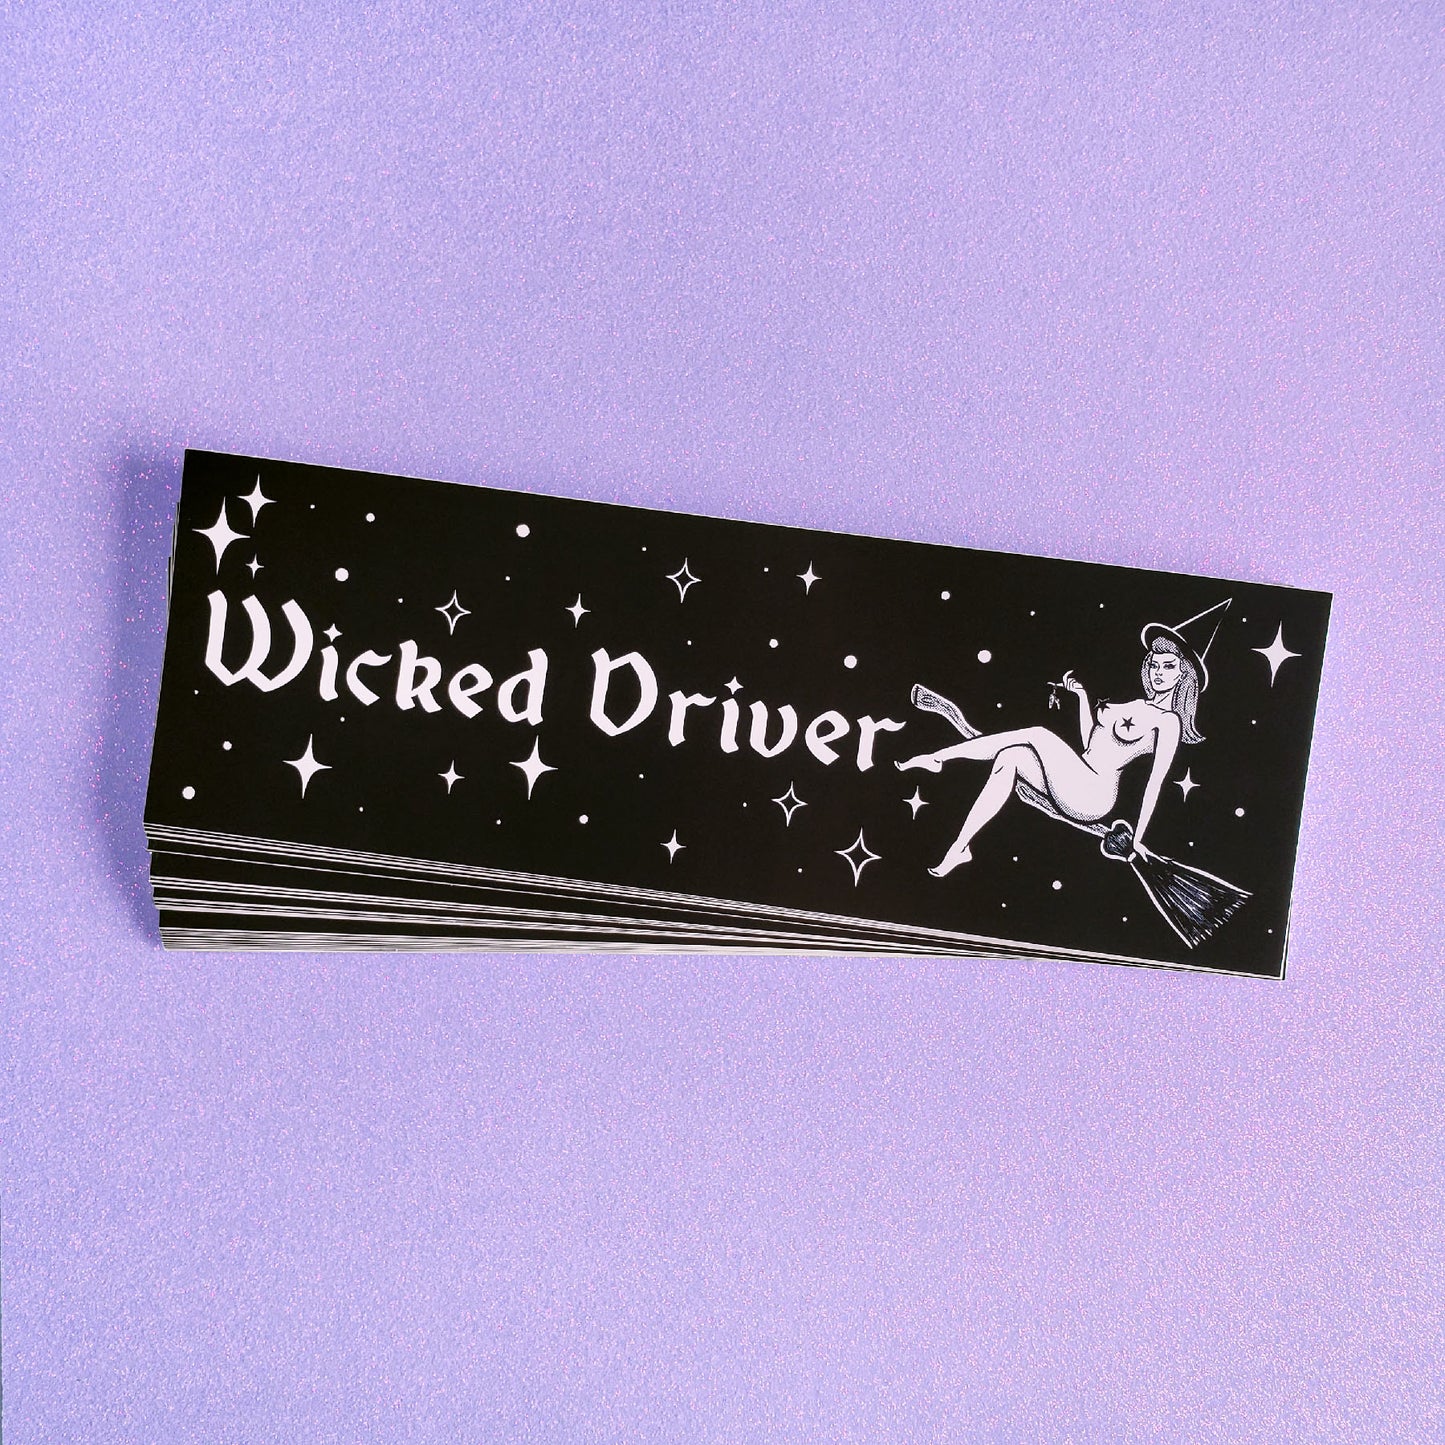 Wicked Driver Bumper Sticker